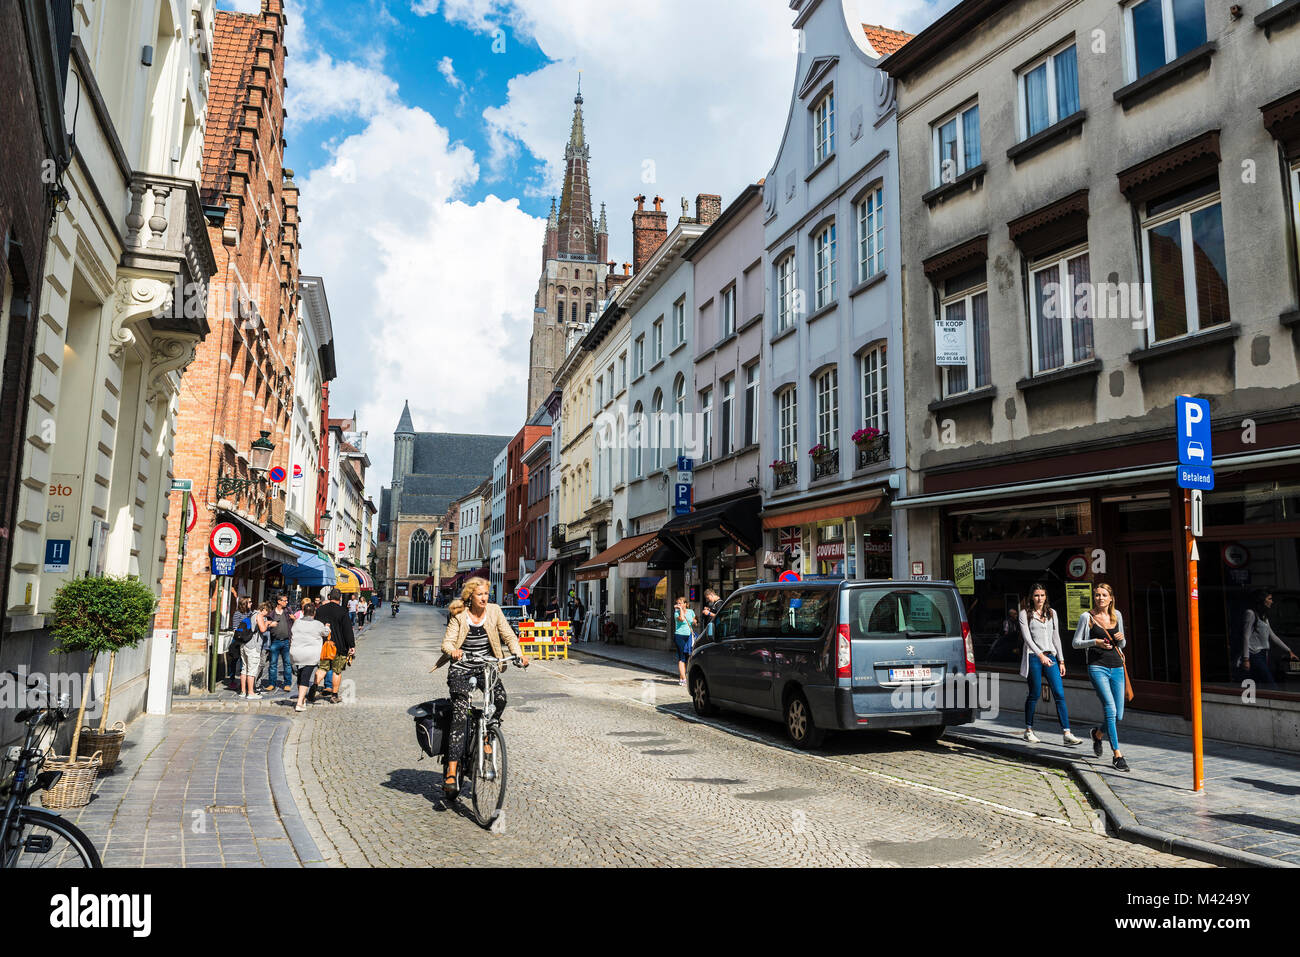 Bruges, Belgique - 1 septembre 2017 : Rue avec personnes à pied et une femme à vélo avec le clocher de Notre-Dame en arrière-plan de la cité médiévale Banque D'Images